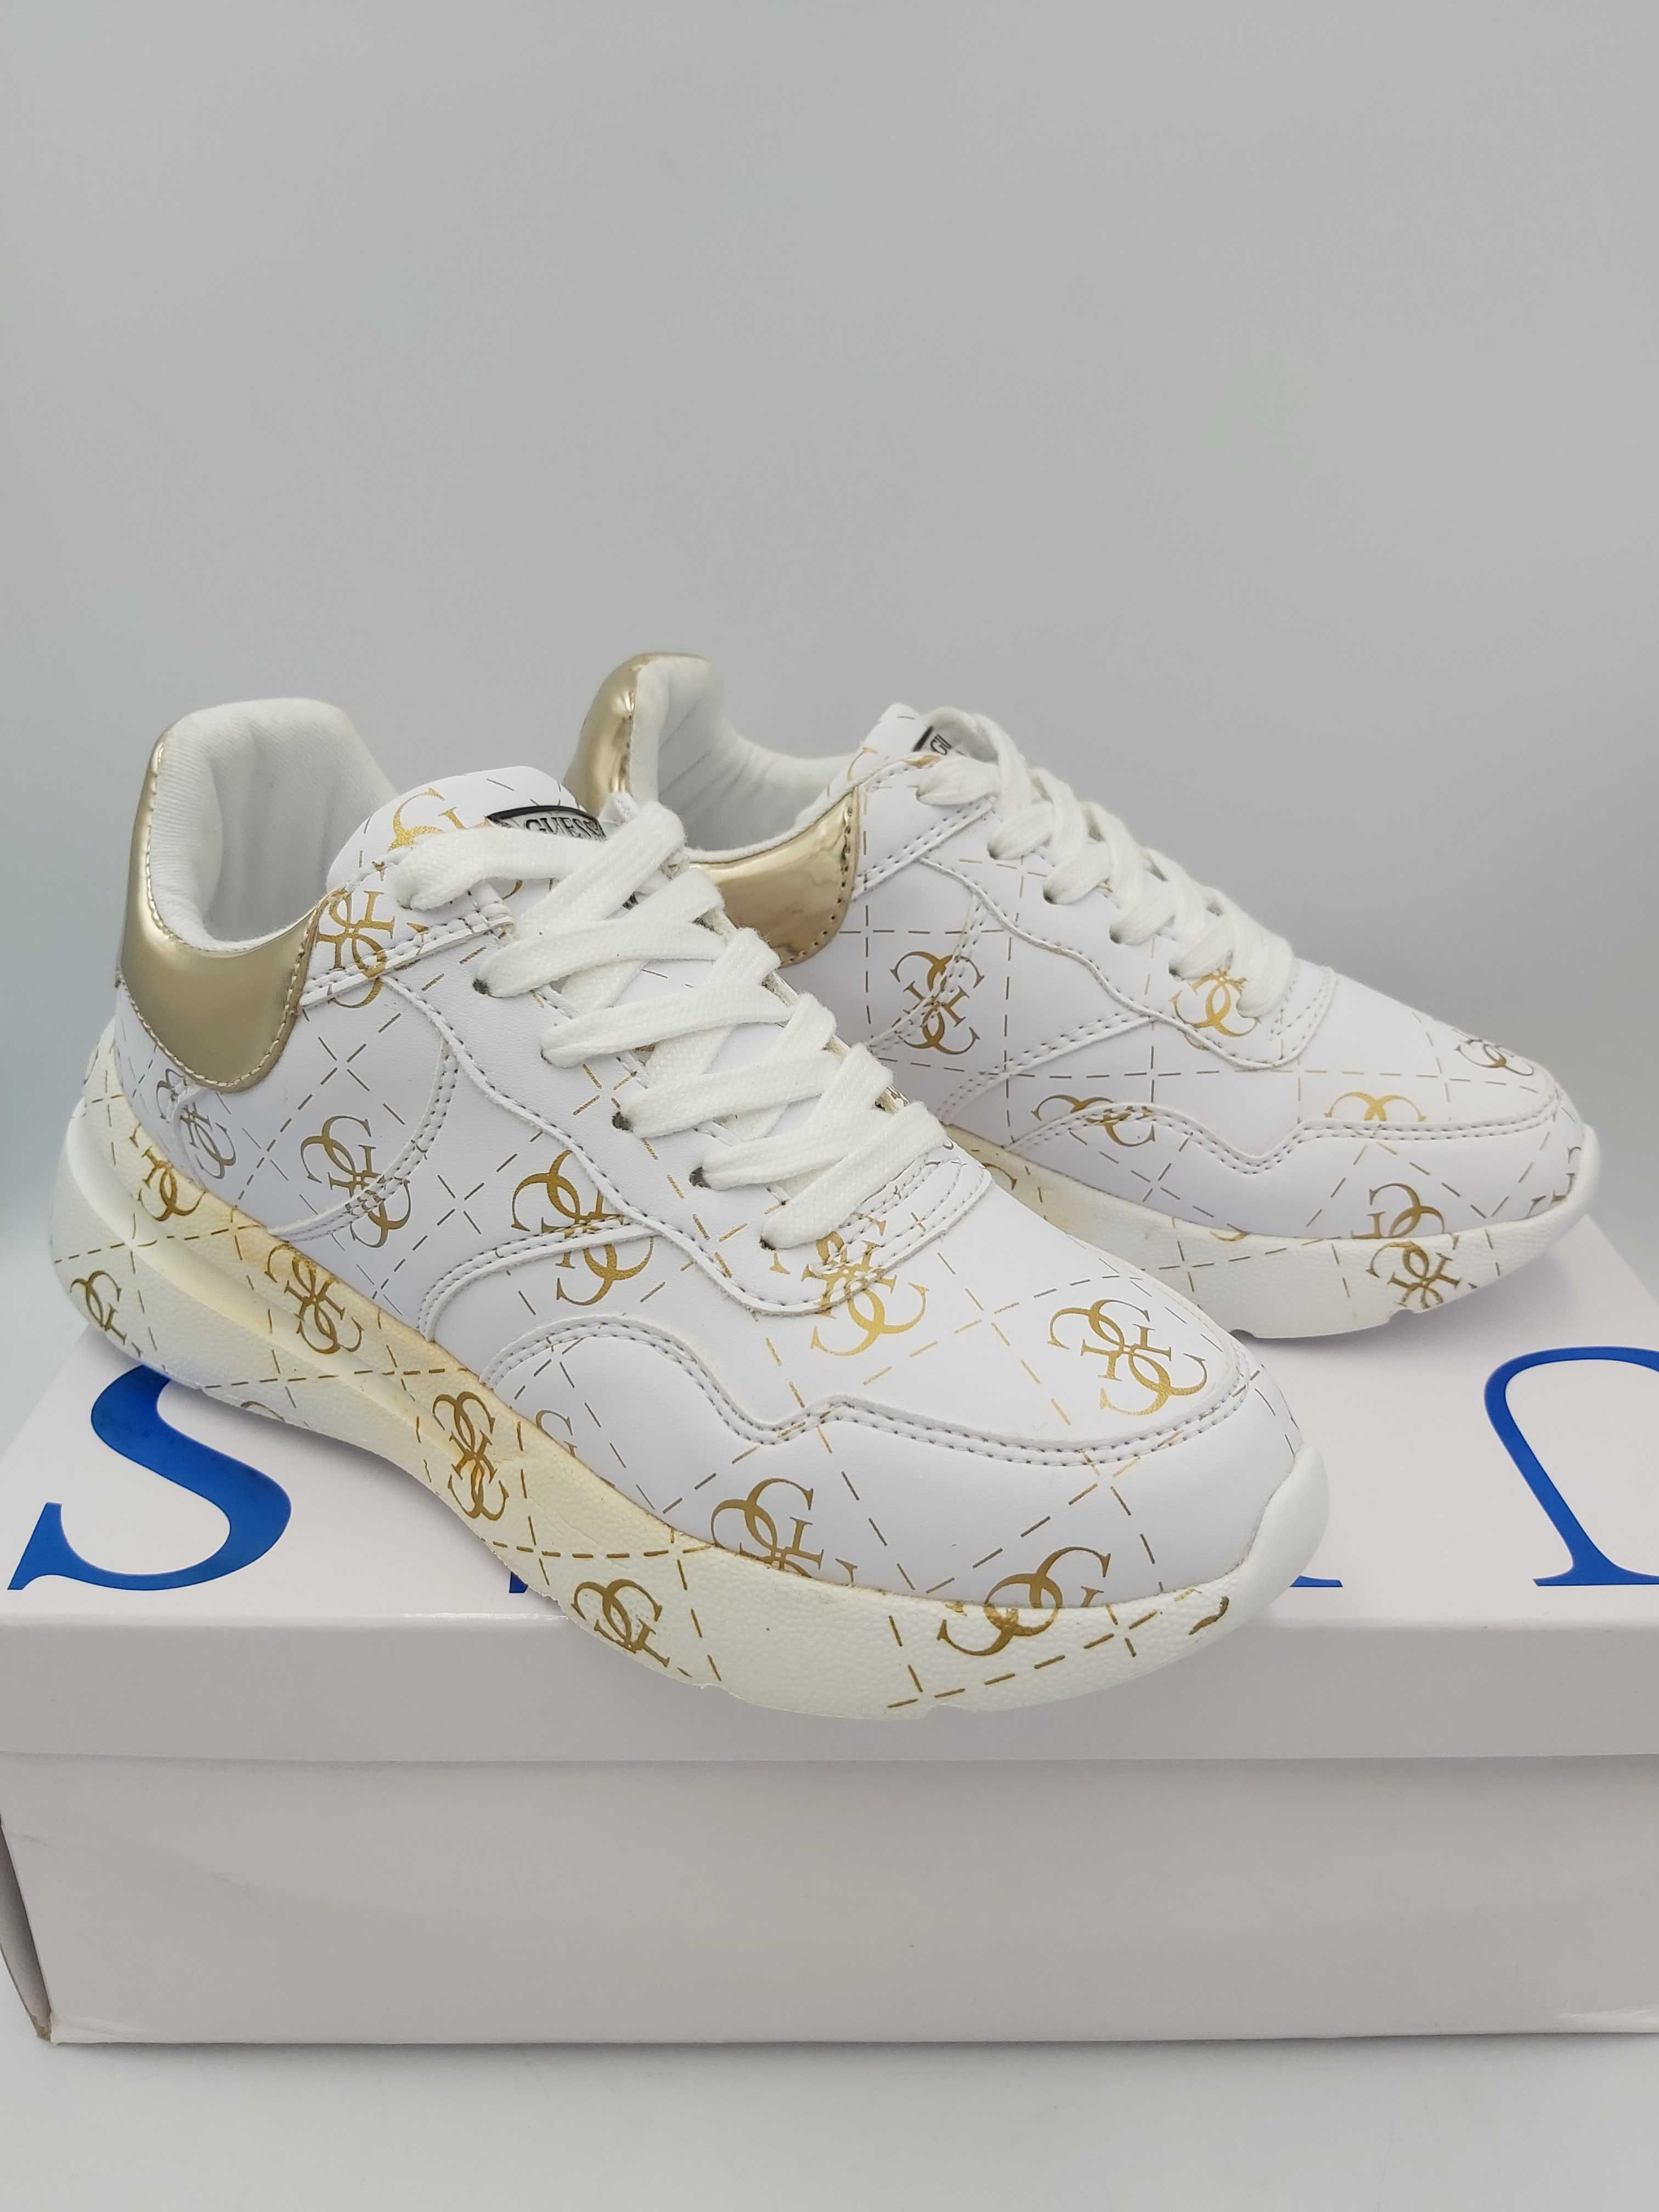 NOWE sneakersy GUESS białe monogram złote platrofma rozmiar 35